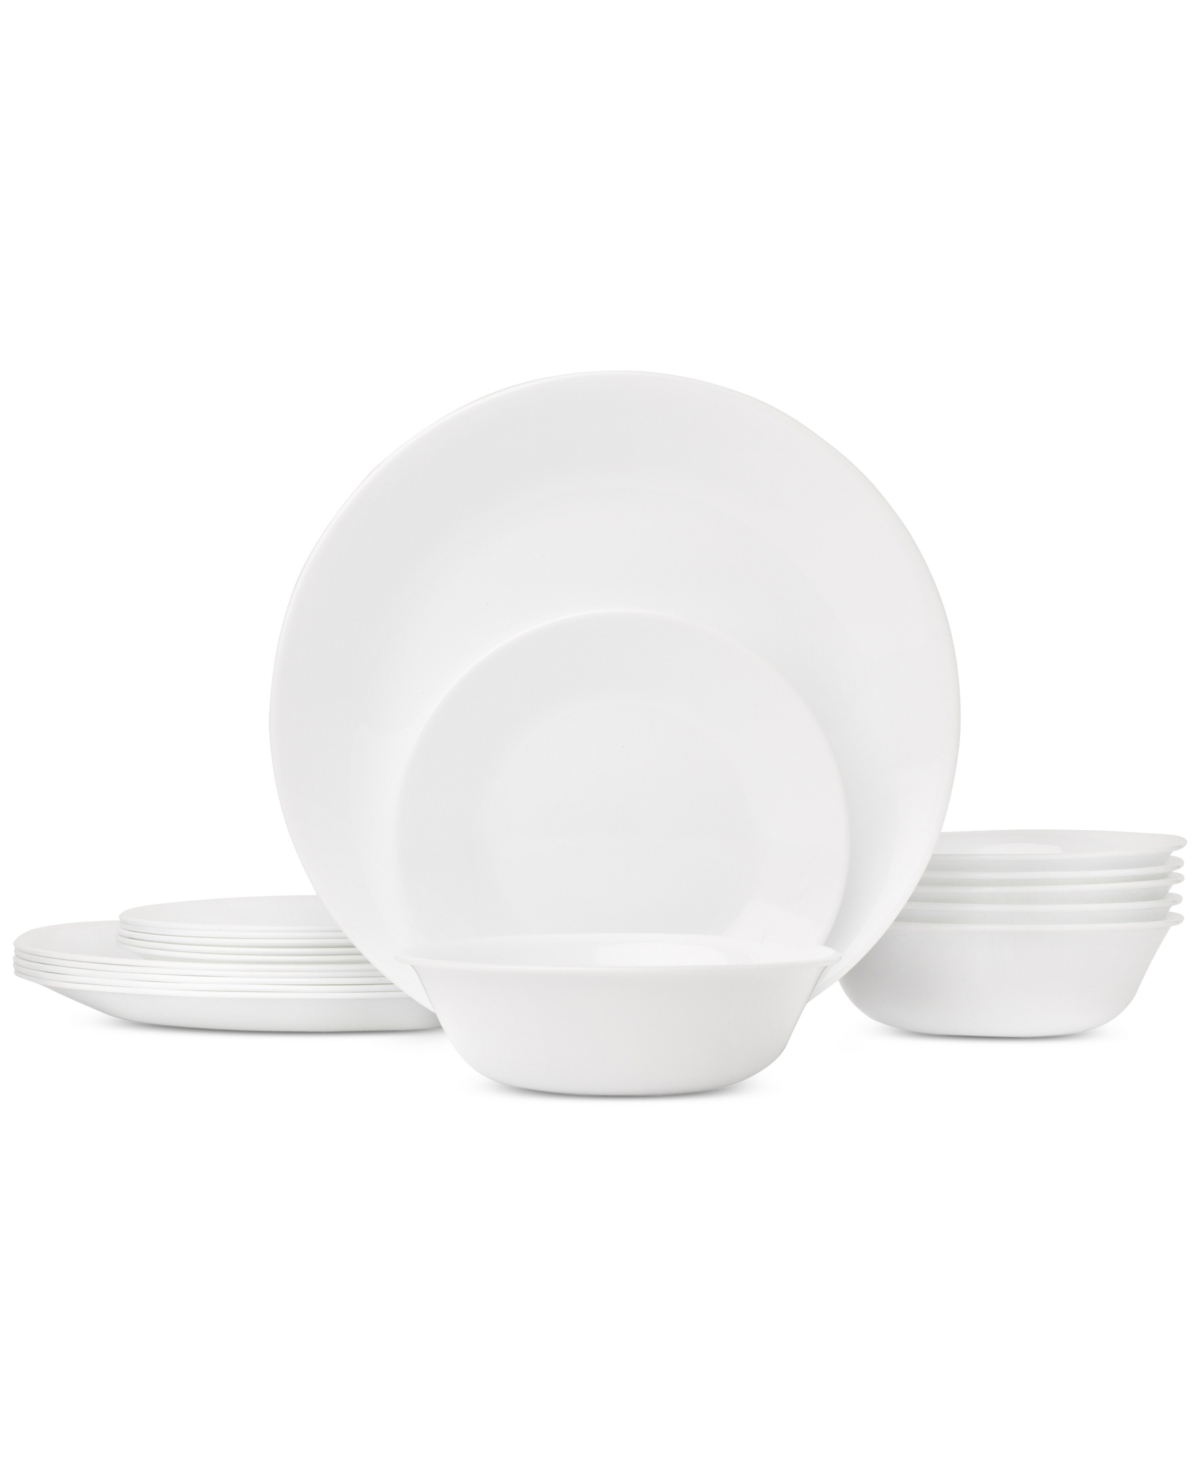 Livingware 18-Piece Dinnerware Set, Service for 6 - White